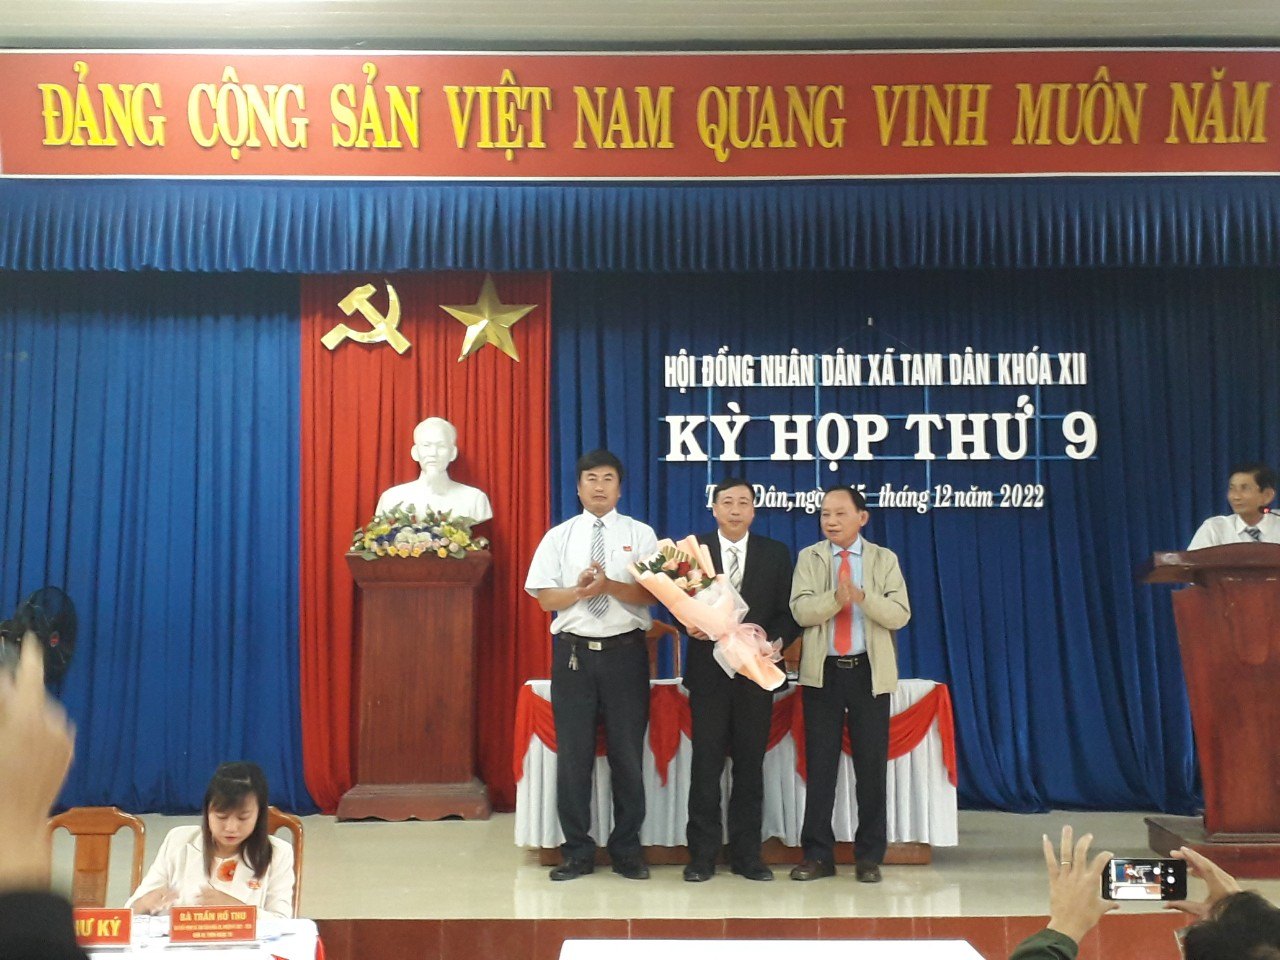 Ông Võ Văn Nam được bầu làm Chủ tịch UBND xã Tam Dân nhiệm kỳ 2021-2026